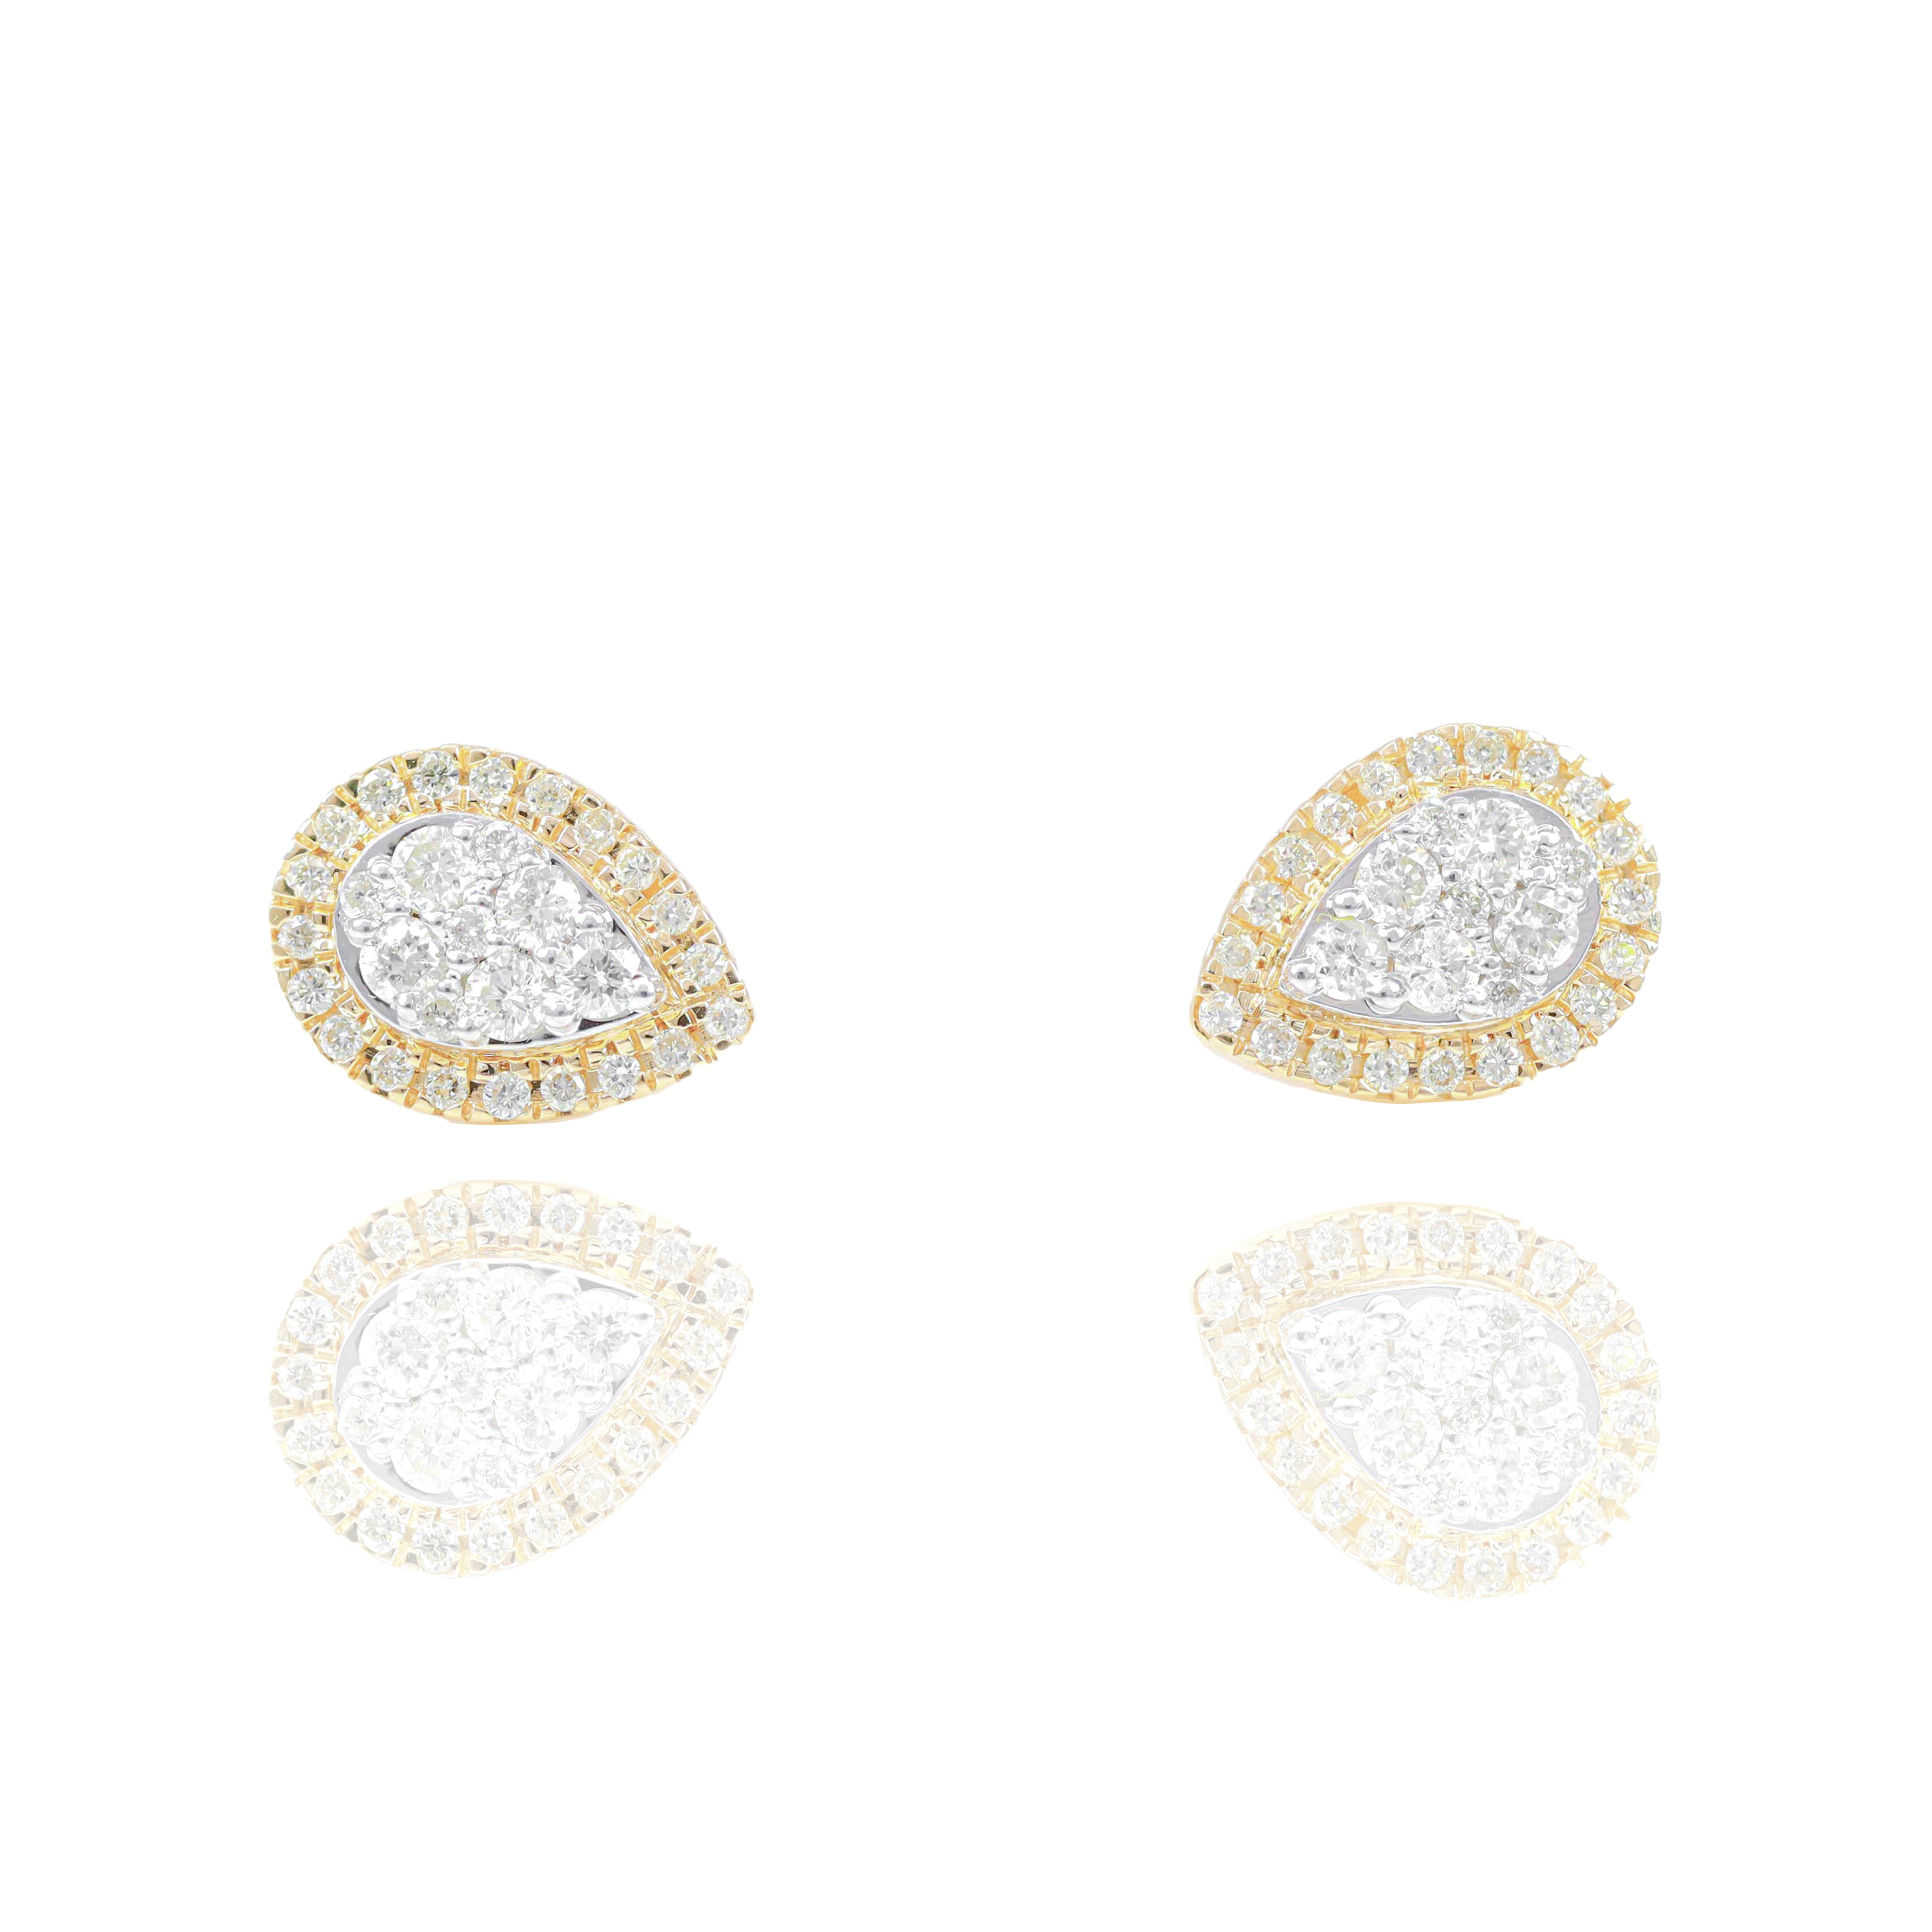 Two-Tone Pear Shape Diamond Earrings